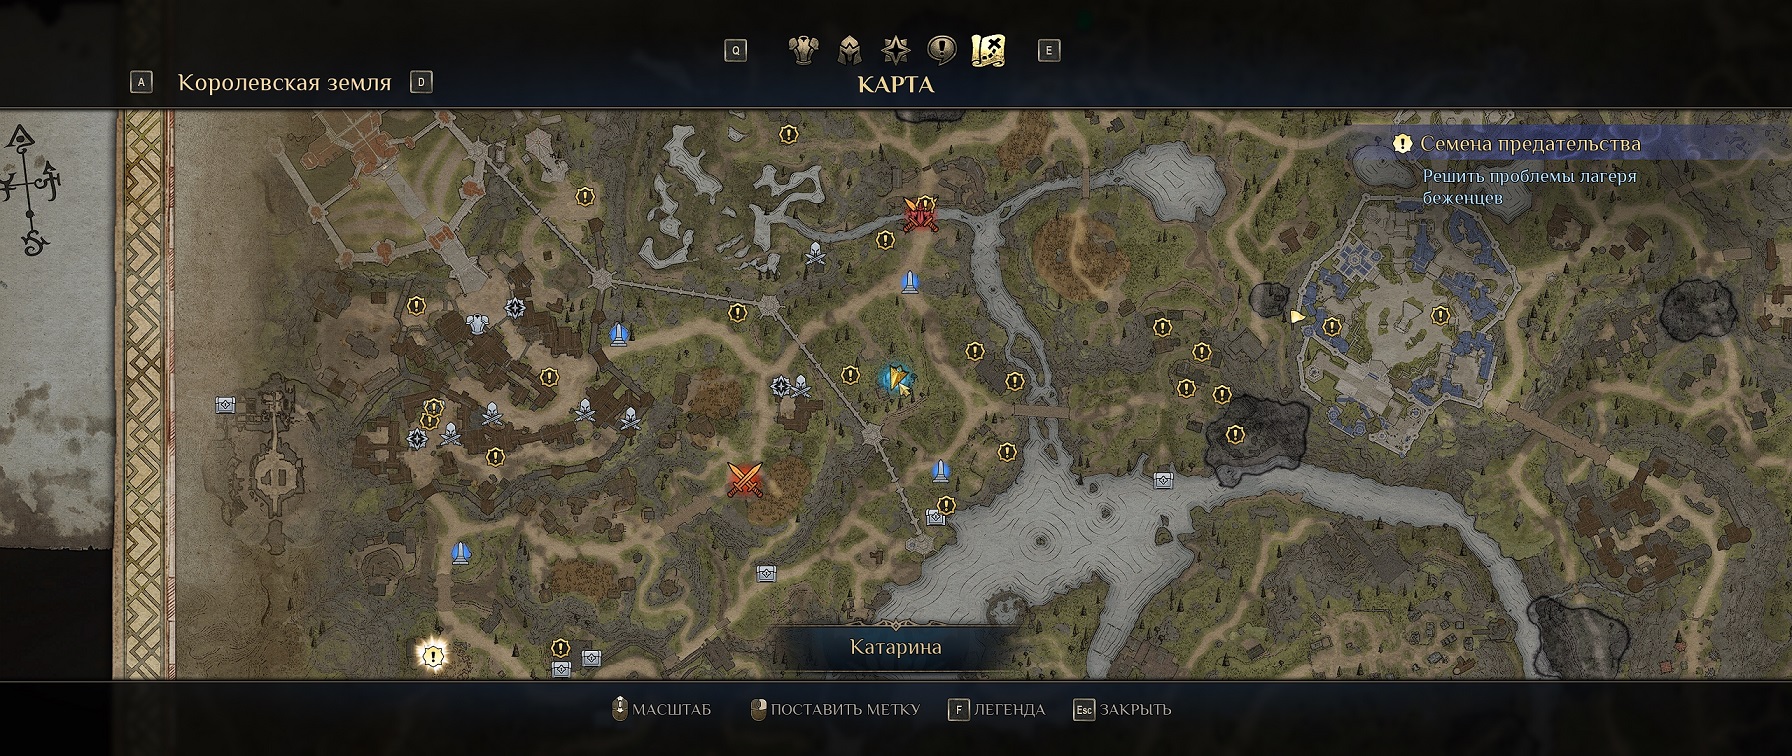 Кингдом кам старая карта. King Bounty 2 Королевская земля интерактивная карта. Магия меча 7 легенды аксирпта сокровища место расположения.